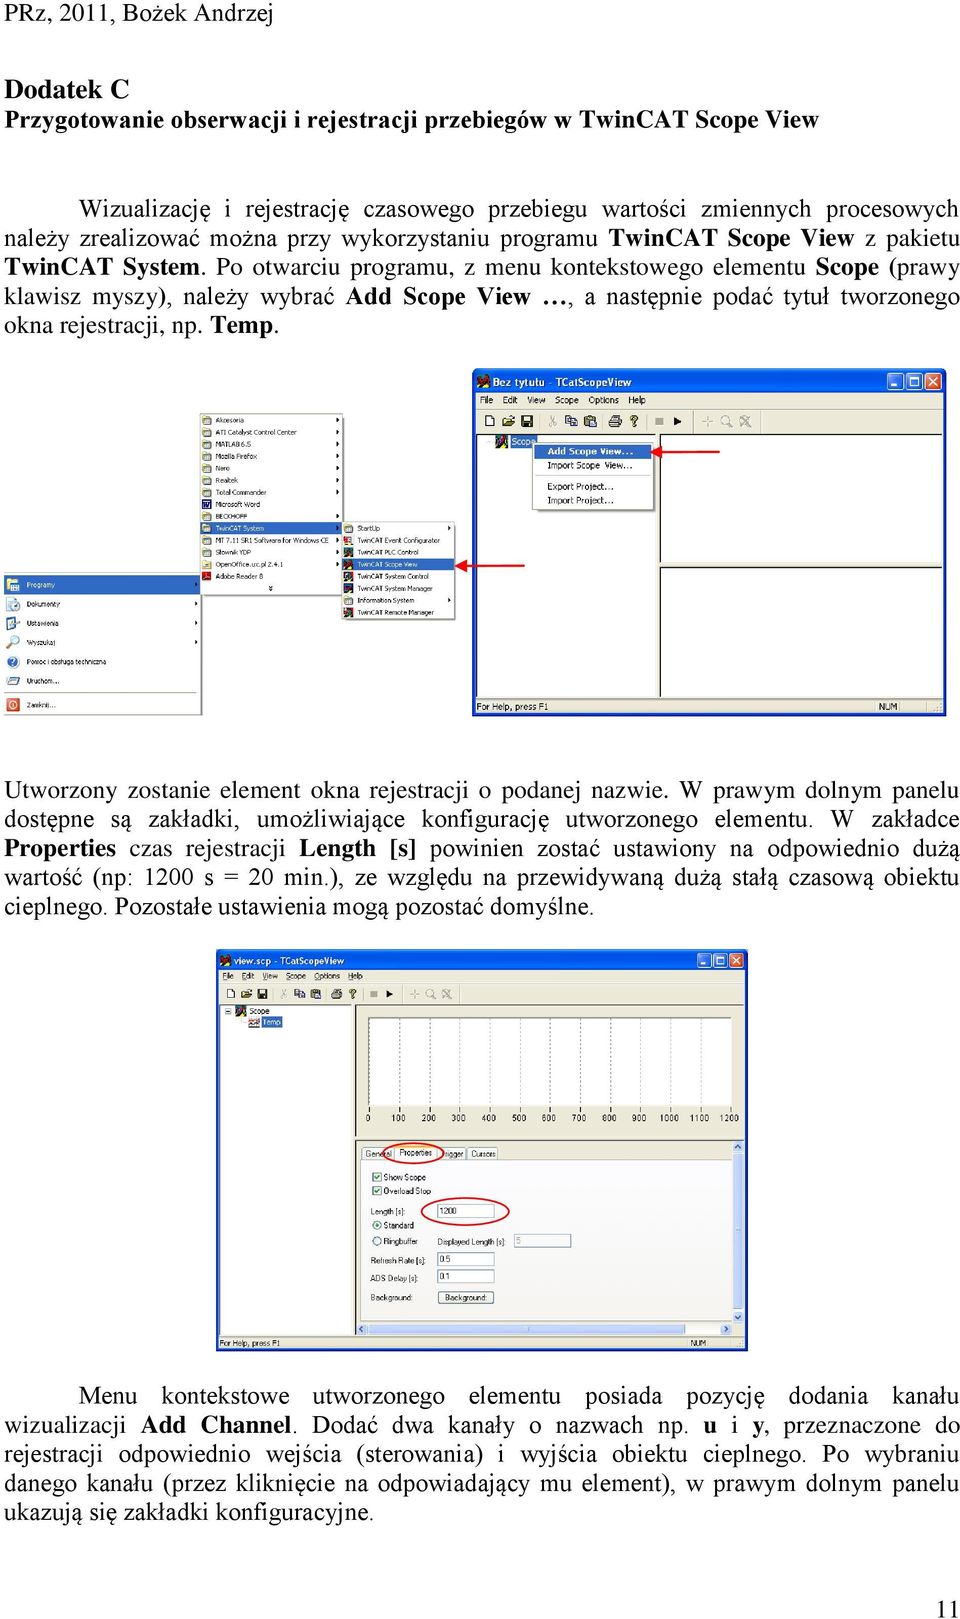 Po otwarciu programu, z menu kontekstowego elementu Scope (prawy klawisz myszy), należy wybrać Add Scope View, a następnie podać tytuł tworzonego okna rejestracji, np. Temp.